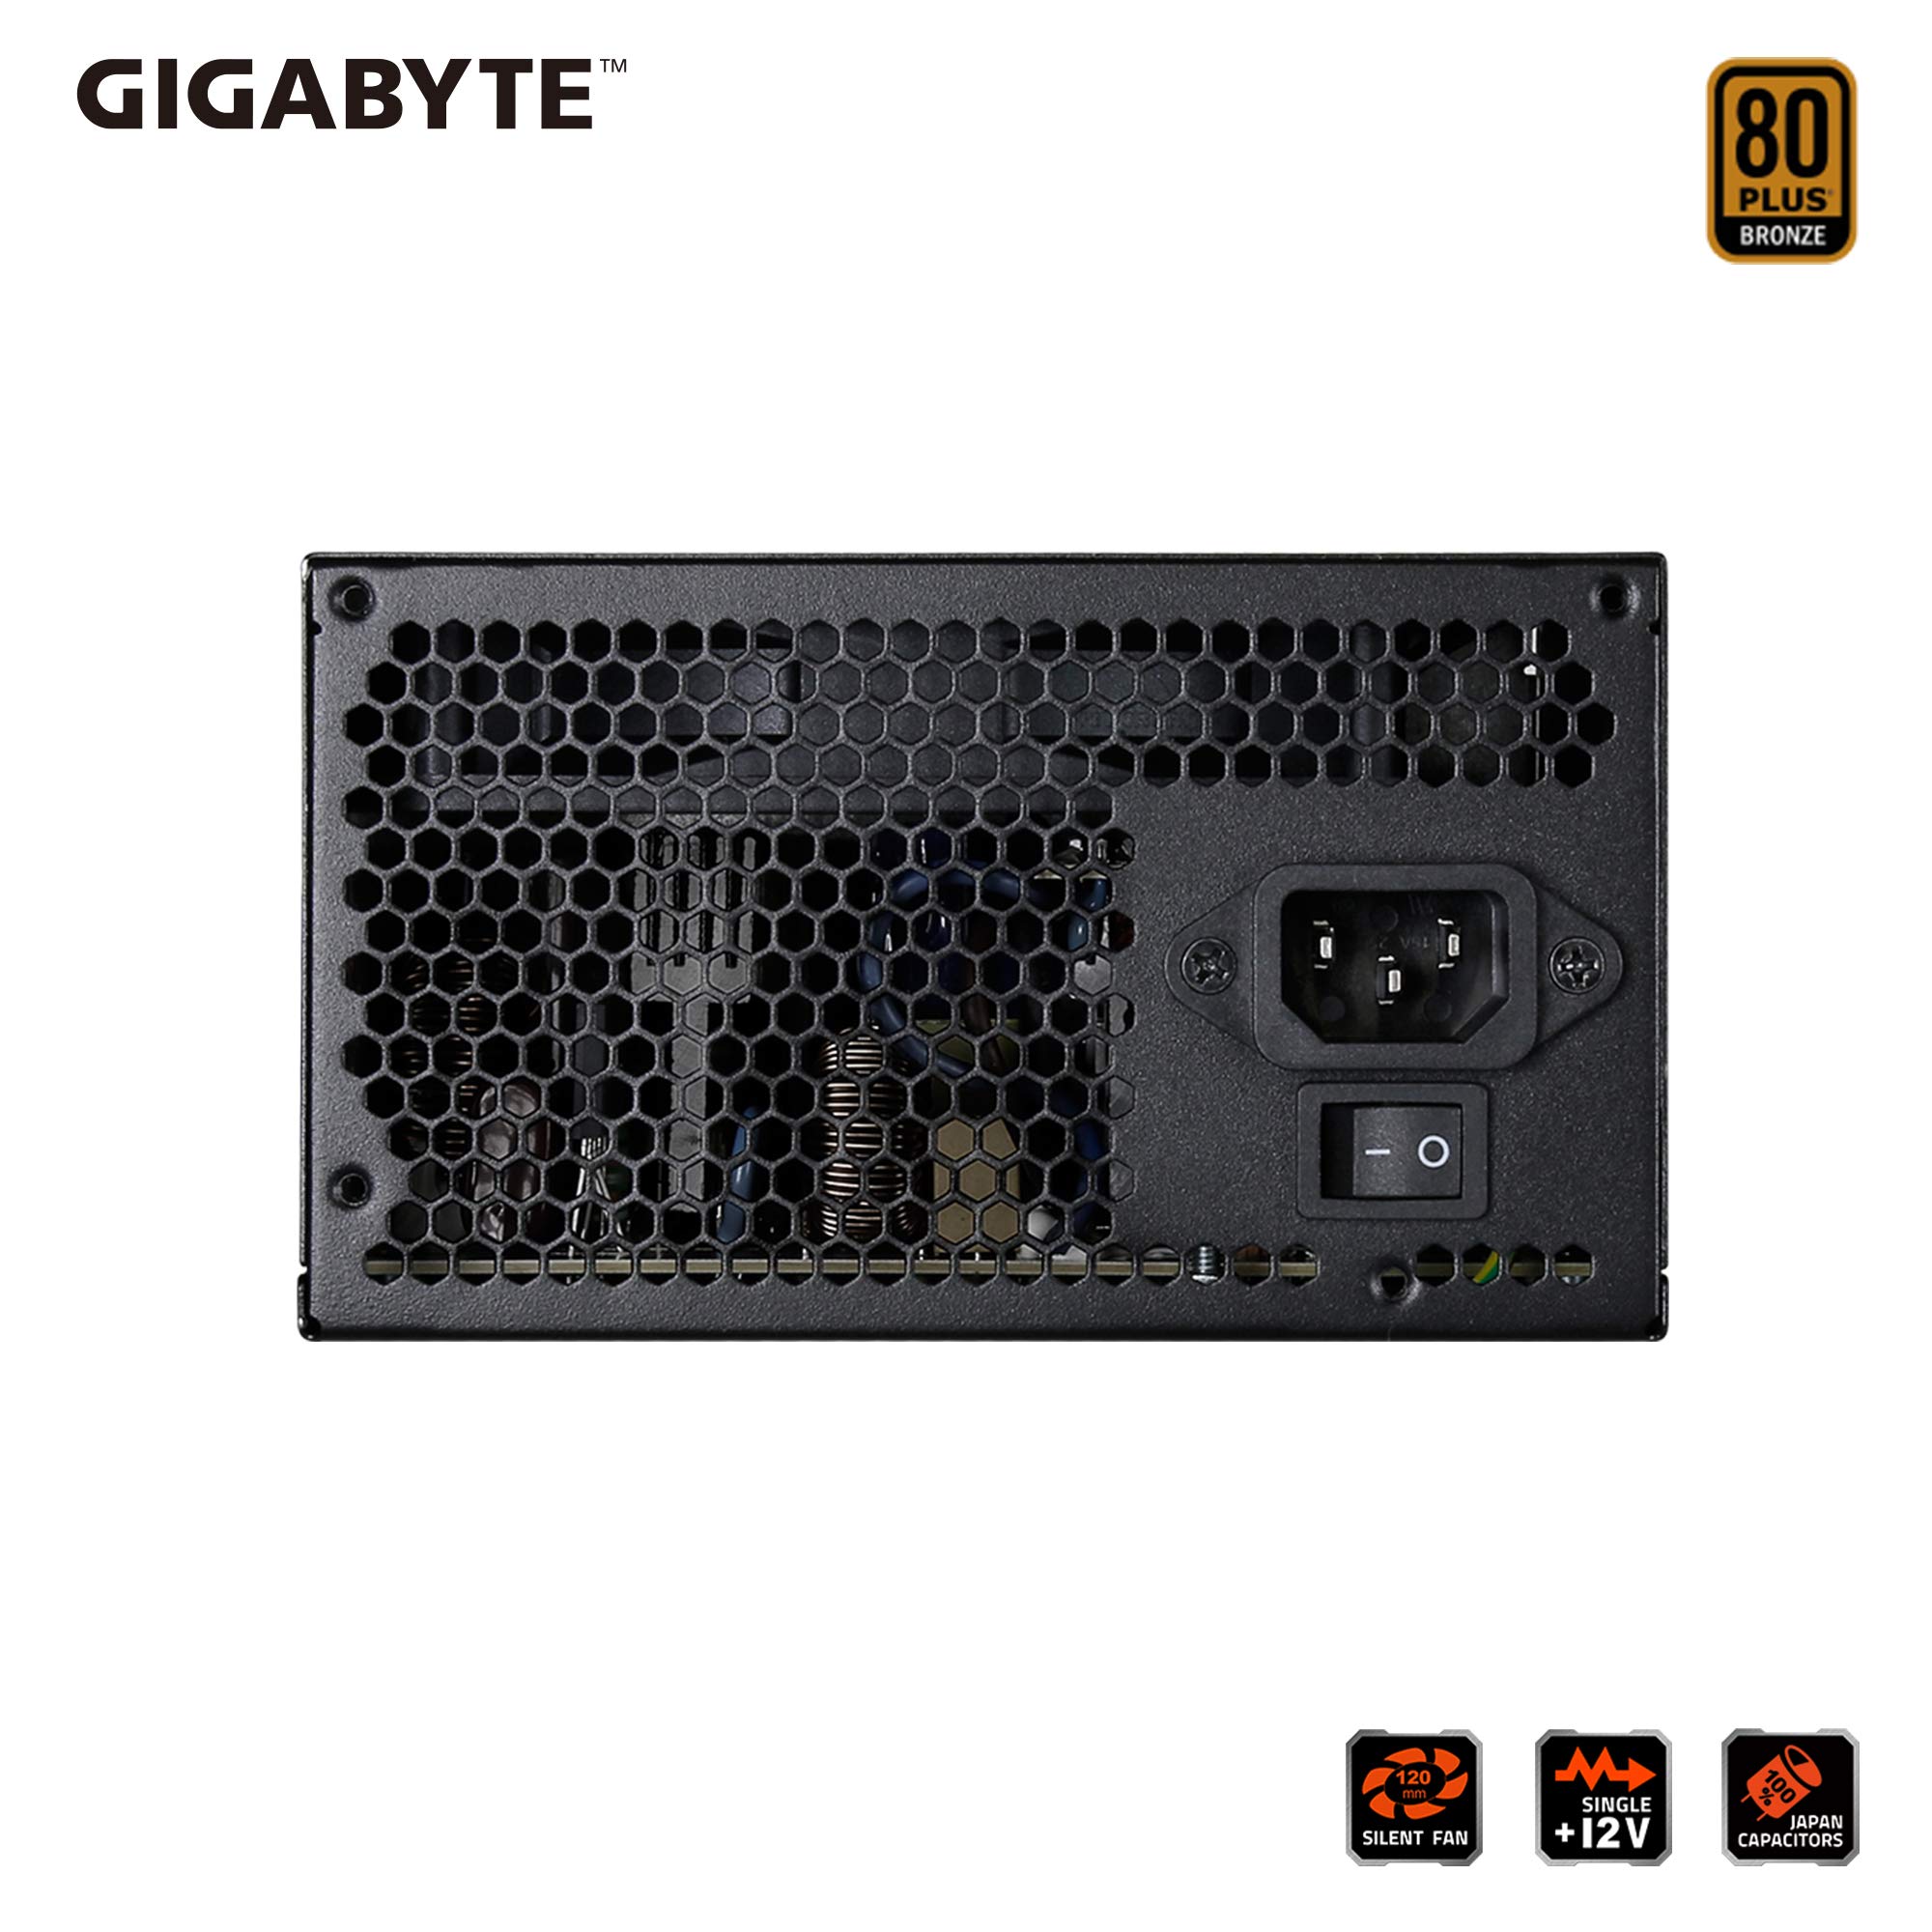 gigabyte p650b